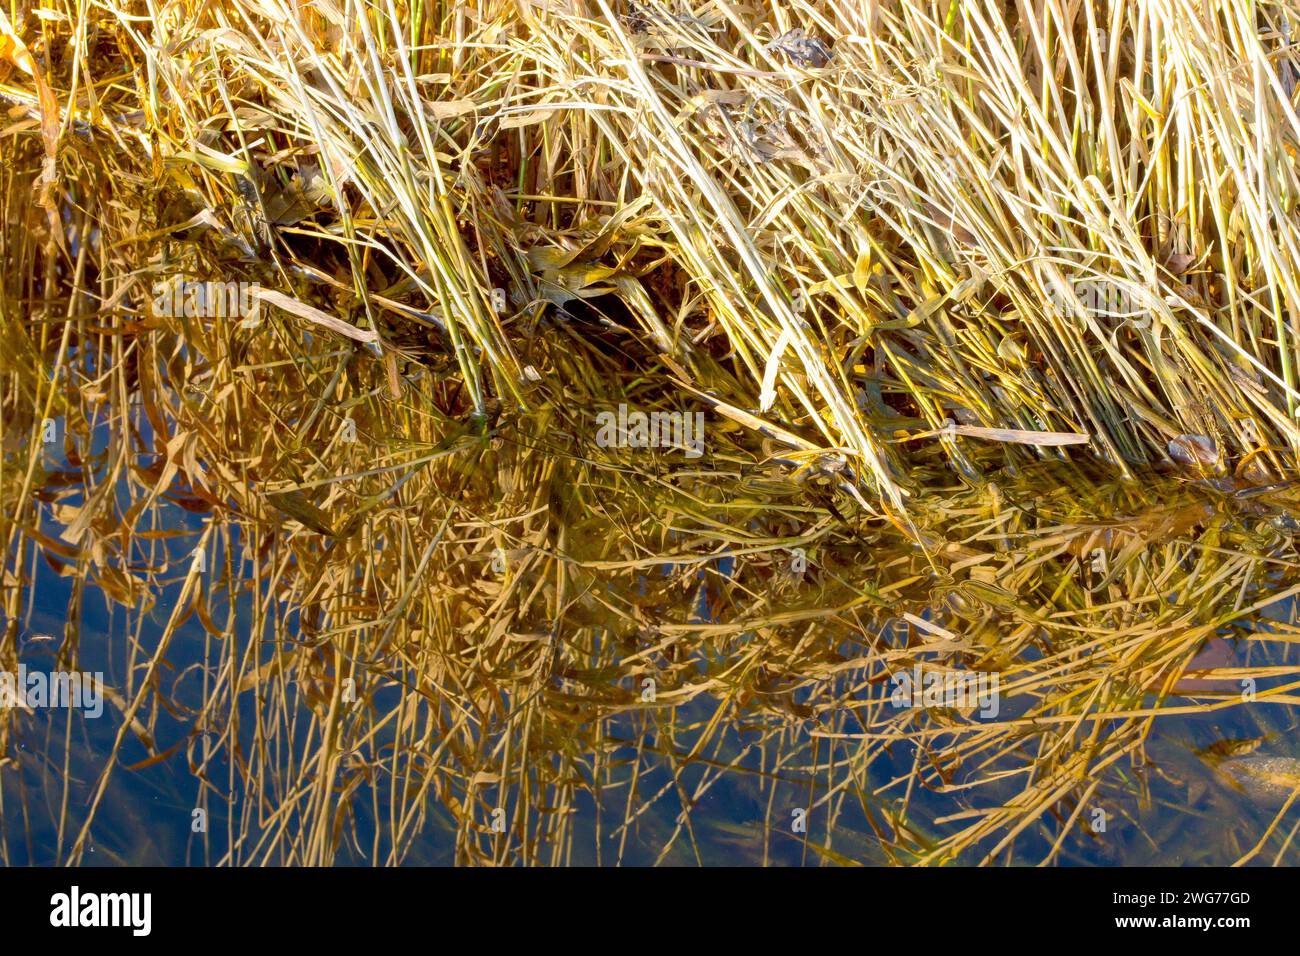 Nahaufnahme von totem Gras am Rande eines überfluteten Sumpfes, beleuchtet durch das warme Licht einer niedrigen Herbstsonne und reflektiert im stillen Wasser zusammen mit einem blauen Himmel. Stockfoto